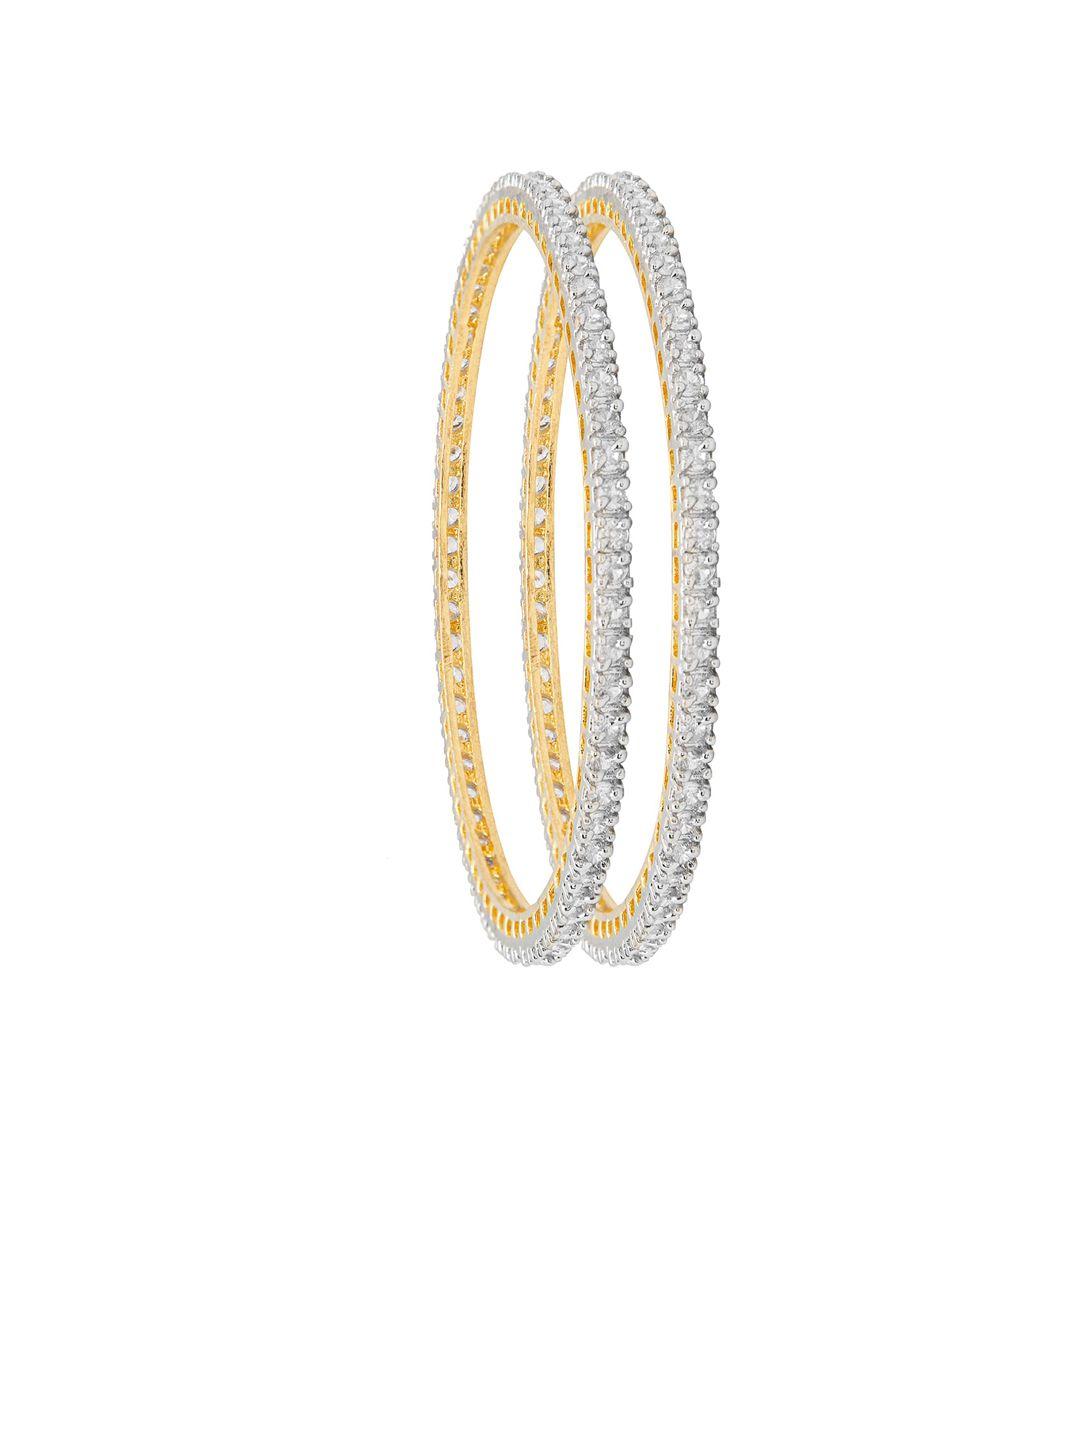 shining-jewel---by-shivansh-women-set-of-2-gold-plated-white-cz-studded-bangle